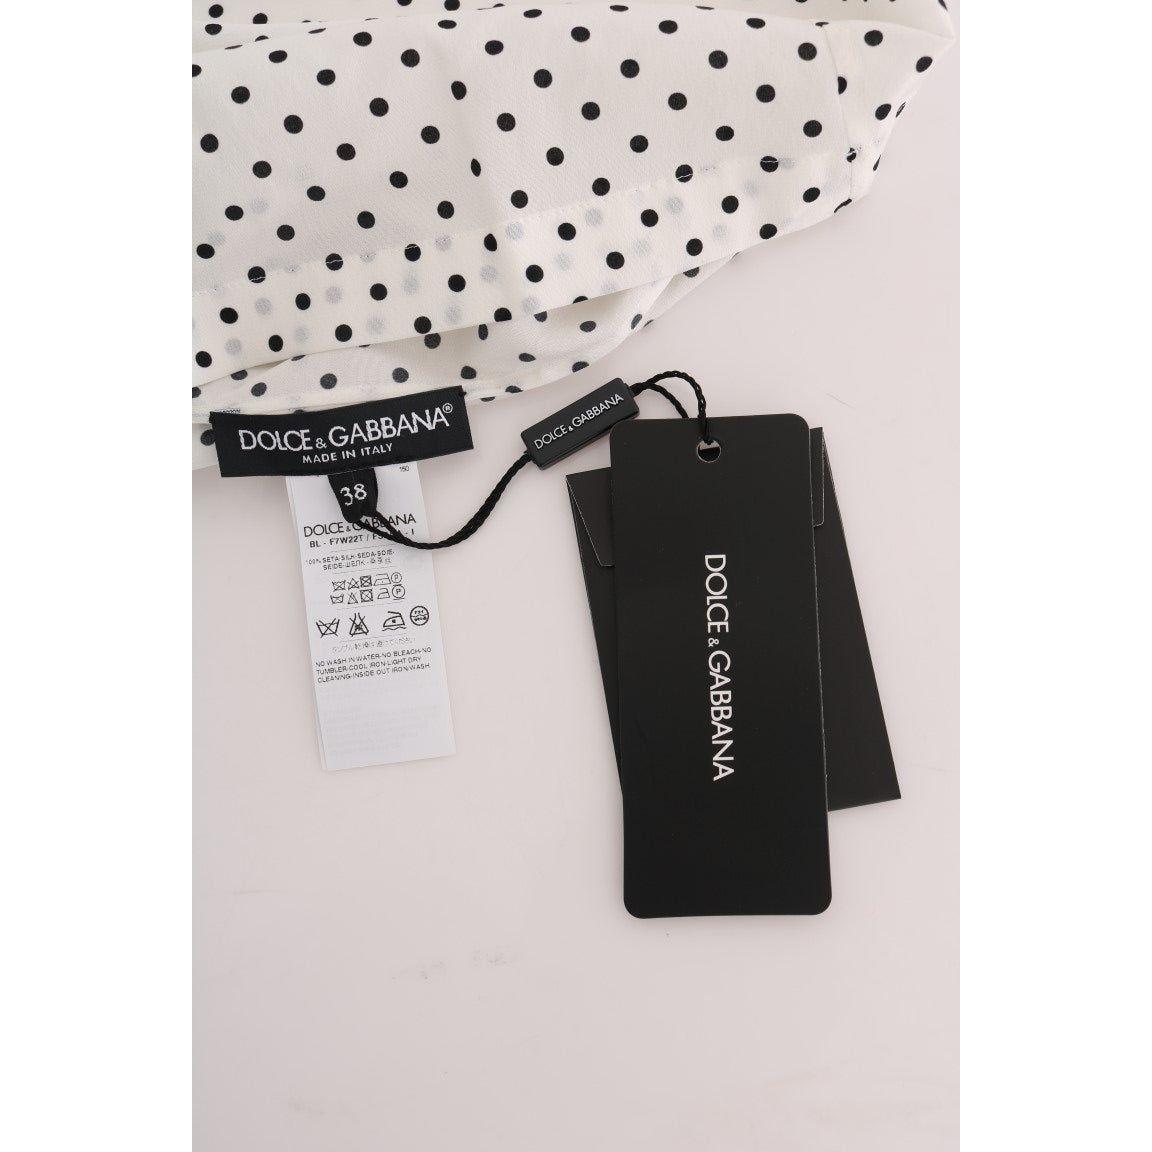 Dolce & Gabbana Chic Polka Dot Silk Blouse white-polka-dotted-silk-t-shirt-top